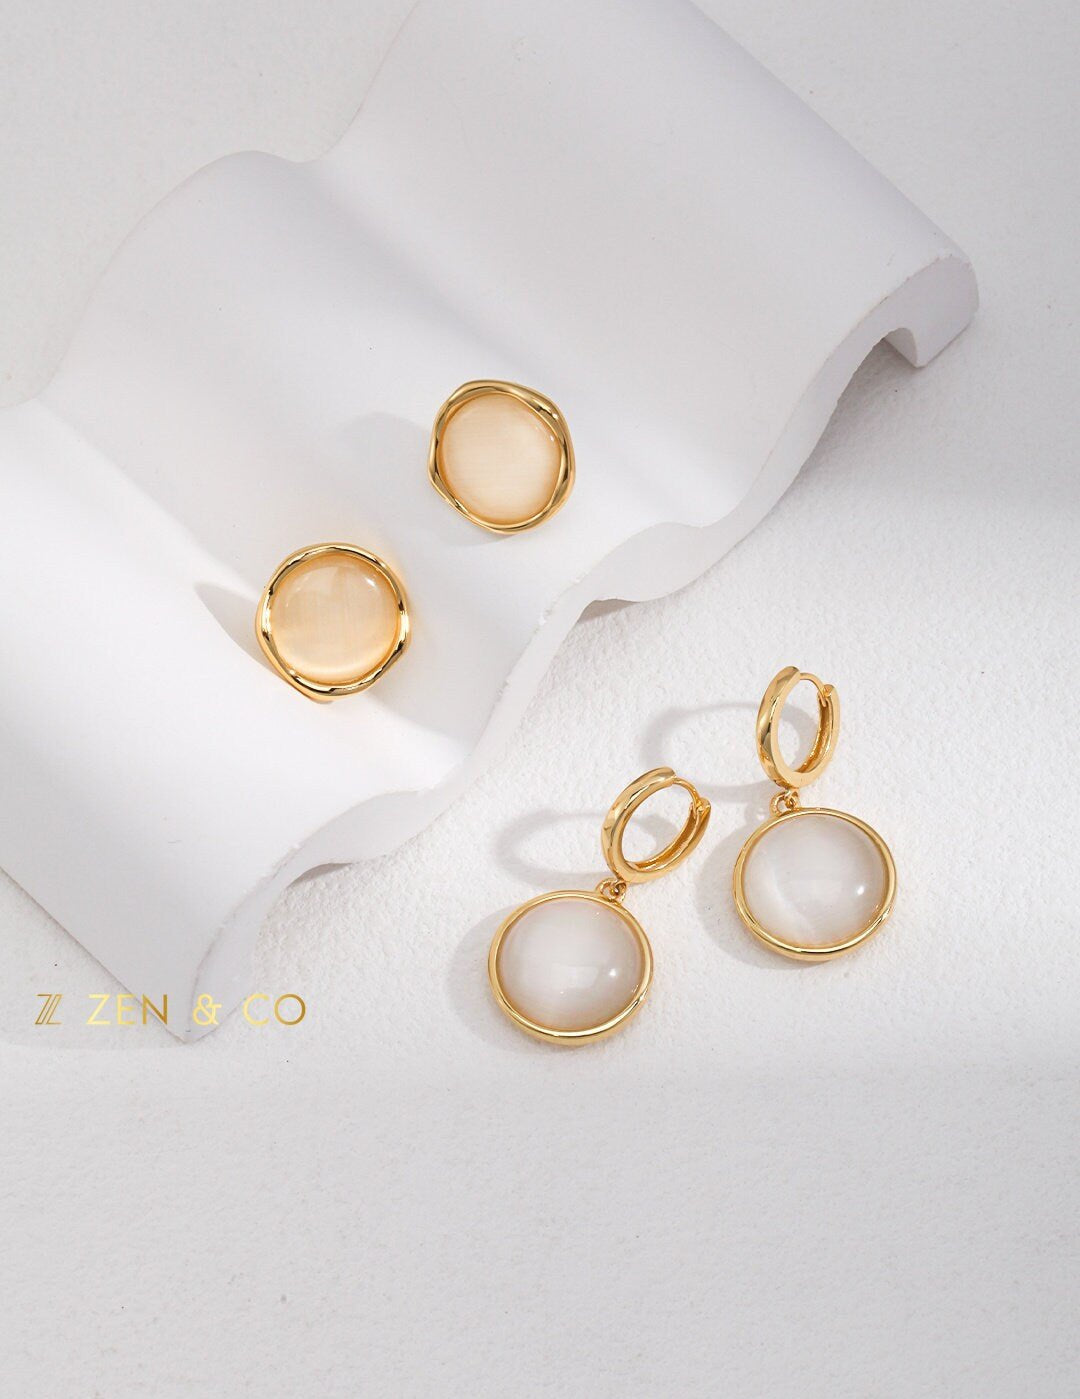 EDEN Cat eye stone stud earrings - ZEN&CO Studio